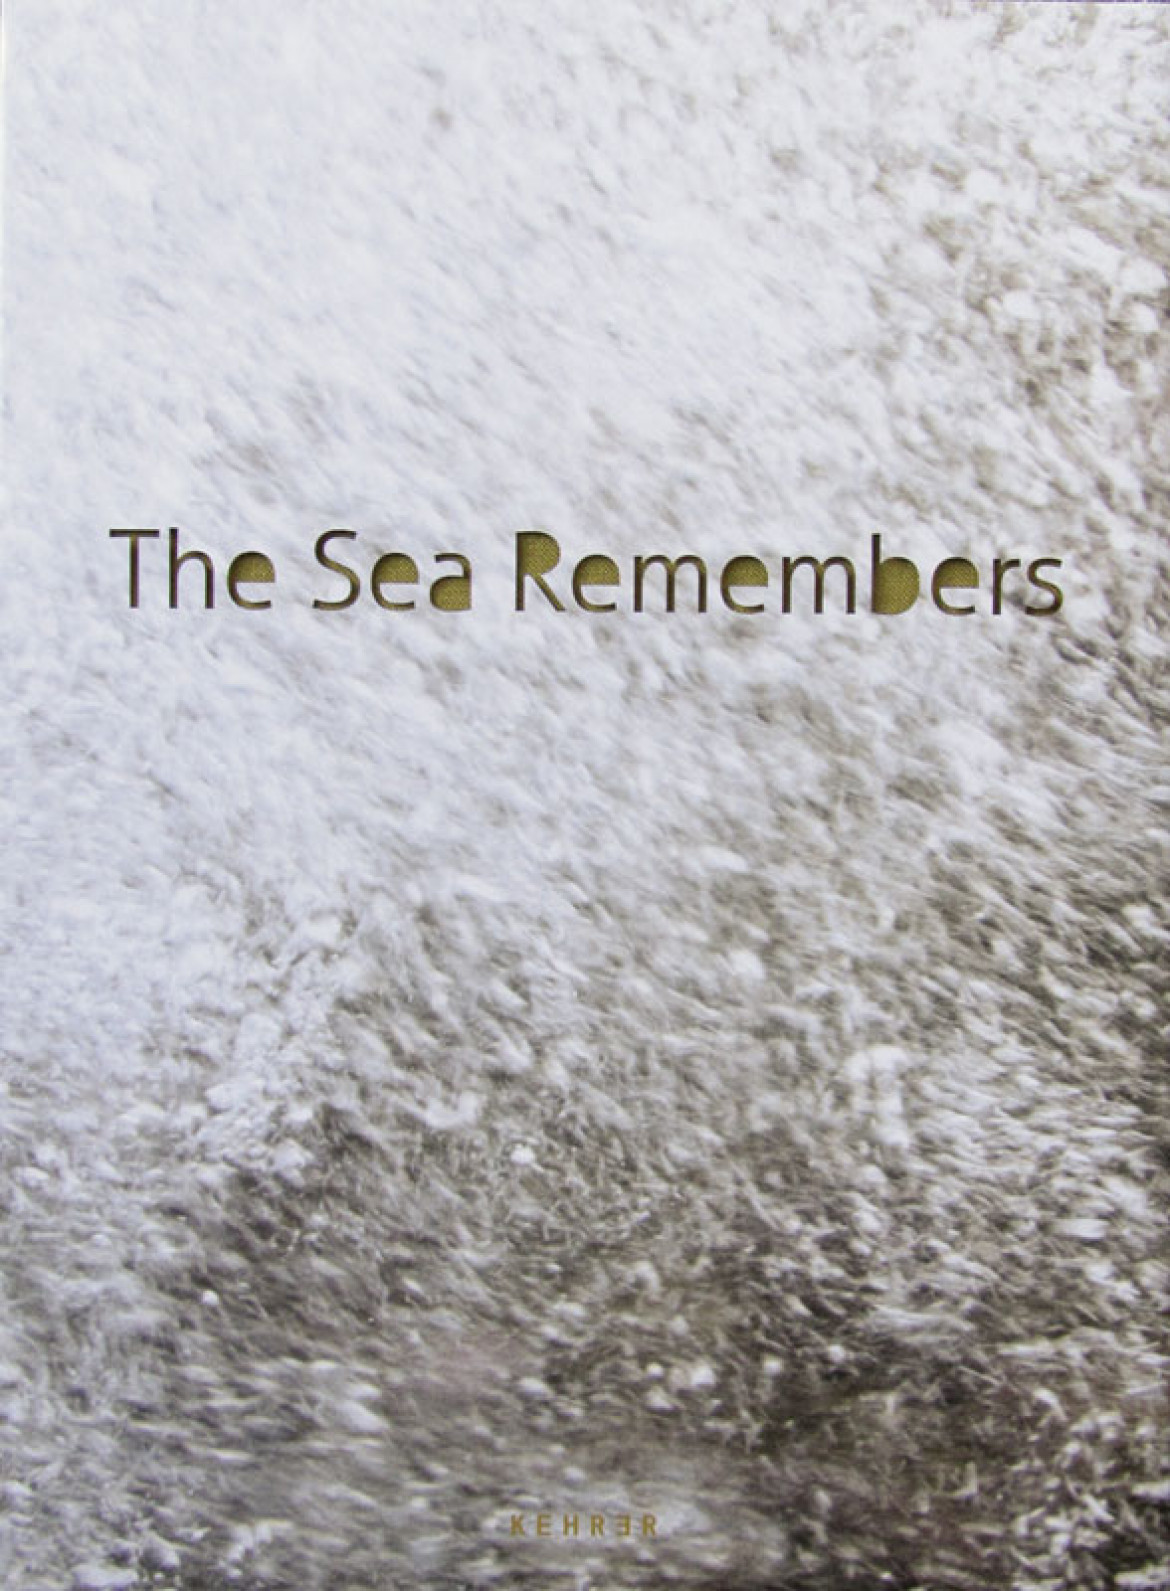 Rosemarie Zens "The Sea Remembers"